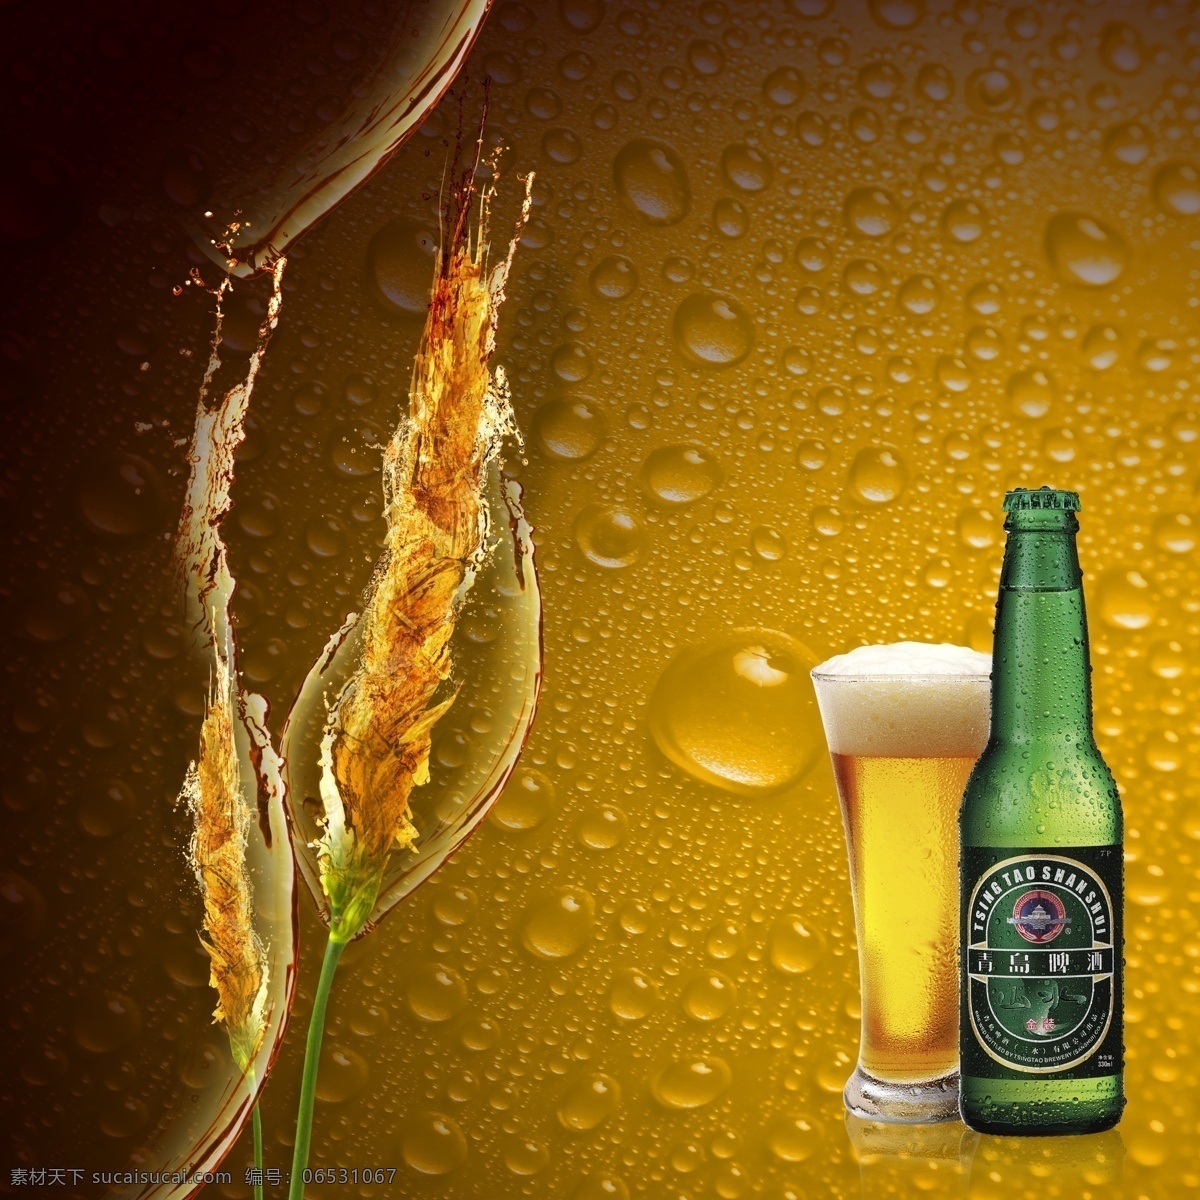 啤酒广告 啤酒 啤酒海报 啤酒dm单 啤酒促销 啤酒单页 啤酒宣传 单 啤酒素材 啤酒设计 啤酒背景 啤酒logo 啤酒广告背景